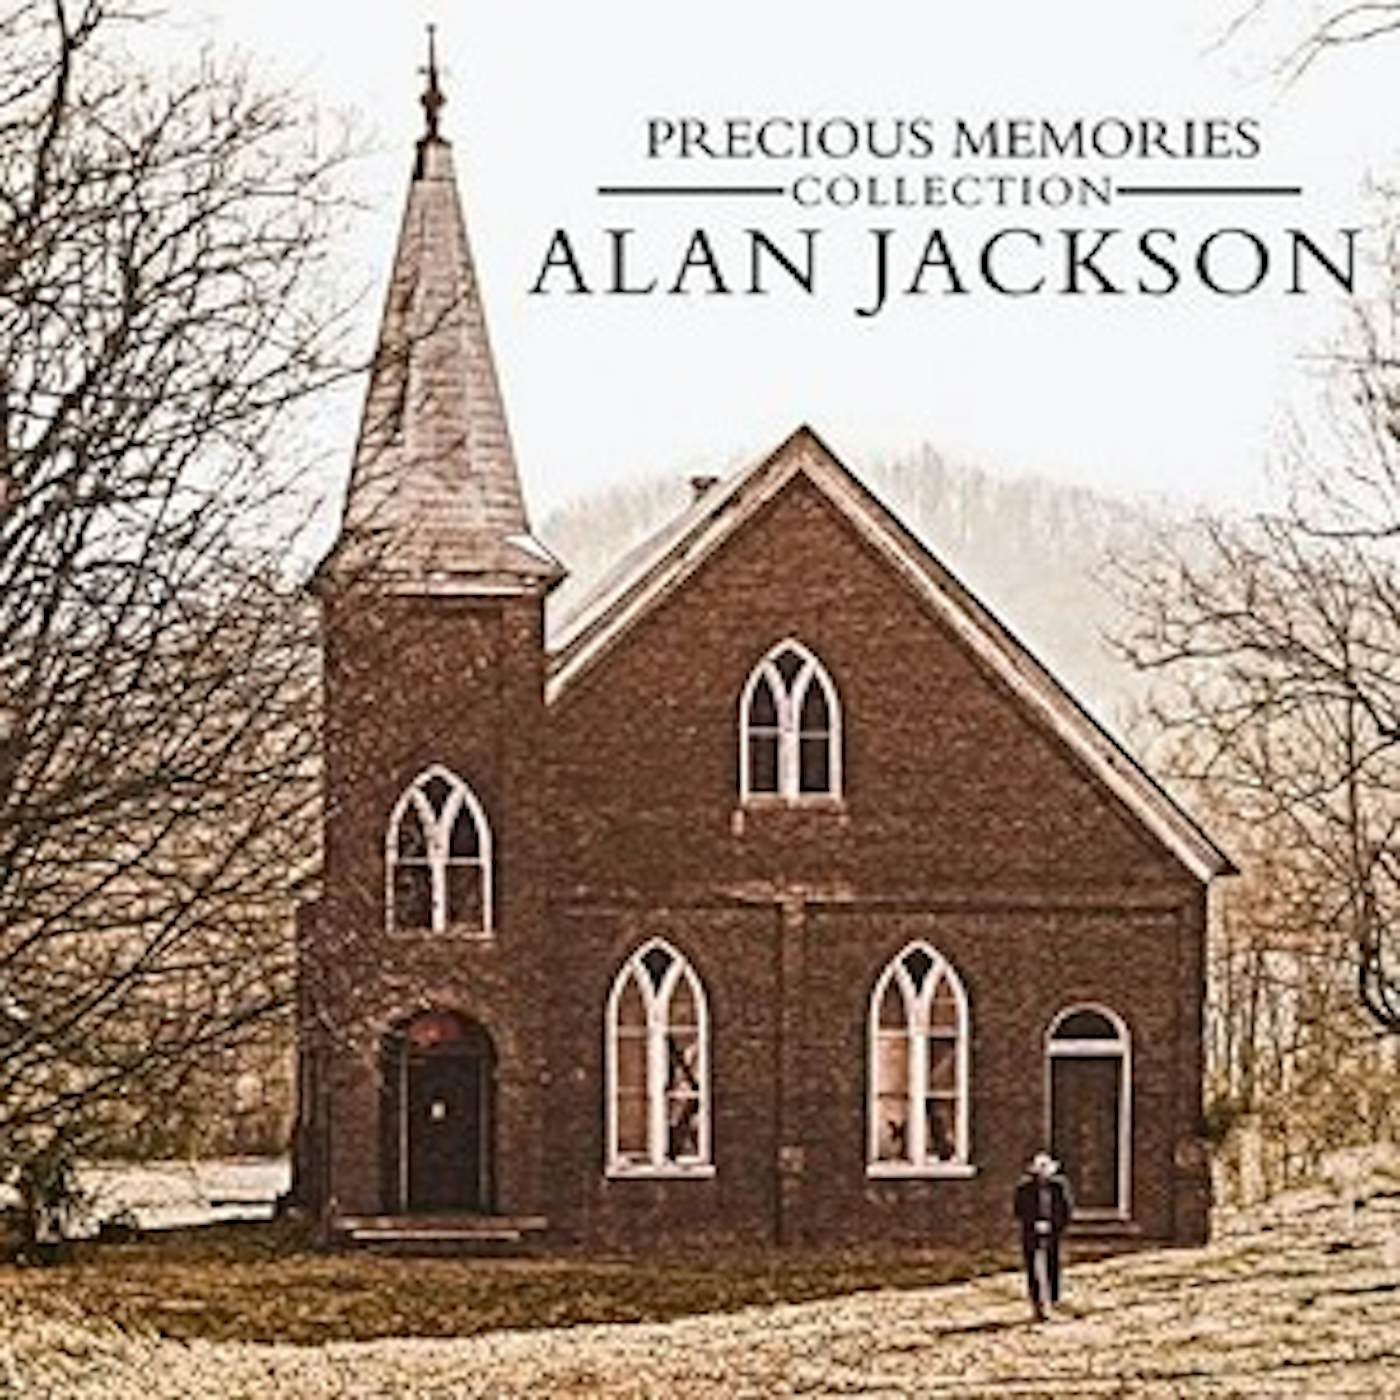 Alan Jackson PRECIOUS MEMORIES COLLECTION CD